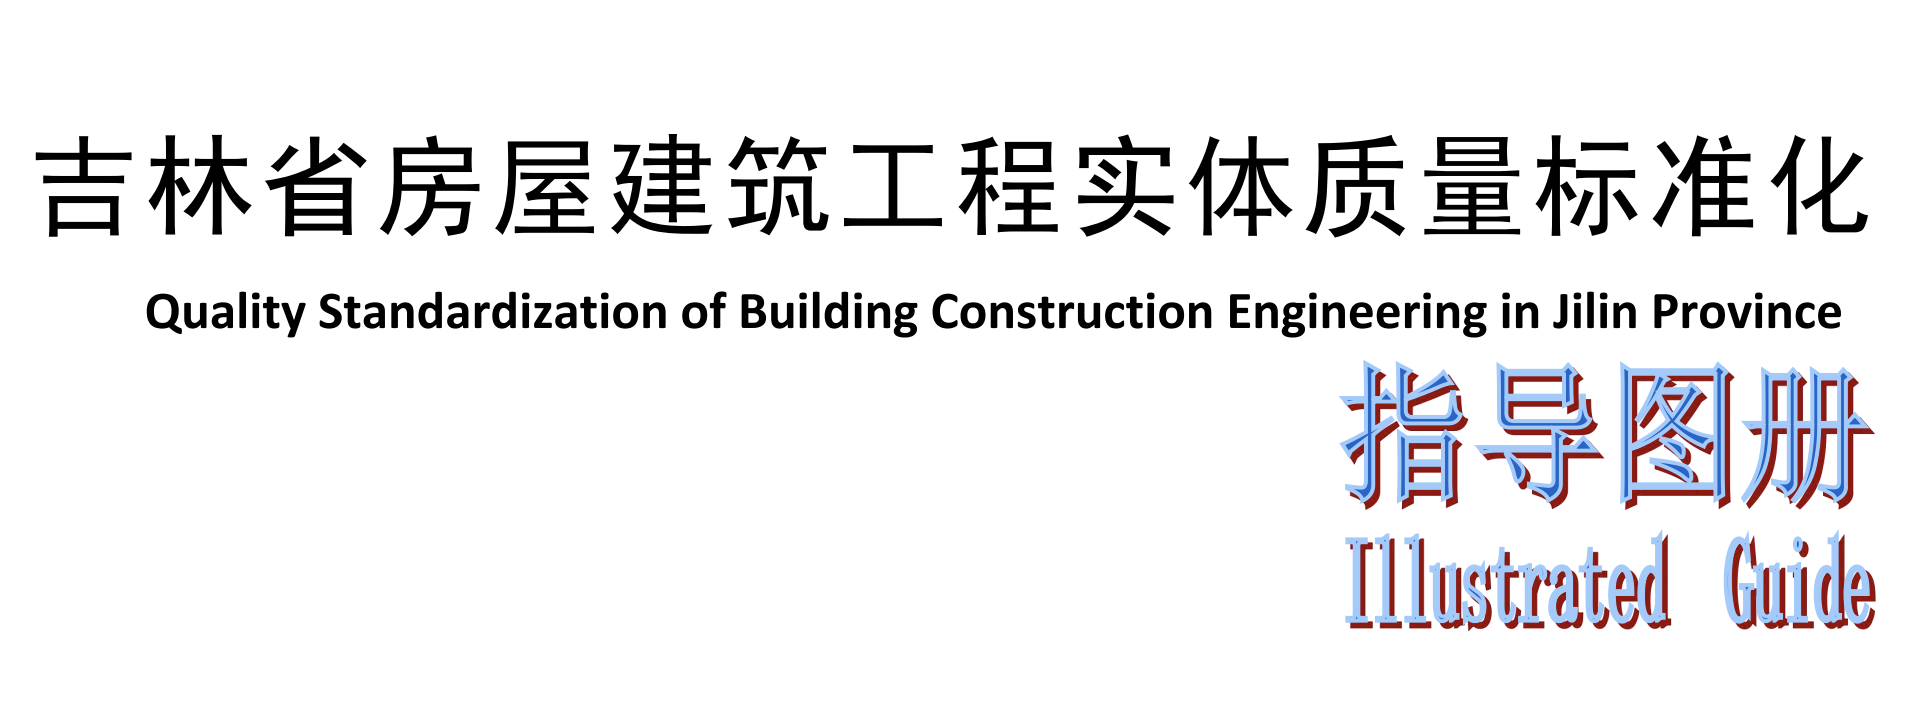 省住建廳編制《吉林省房屋建筑市政工程實體質量標準化指導圖冊》助力工程質量提升